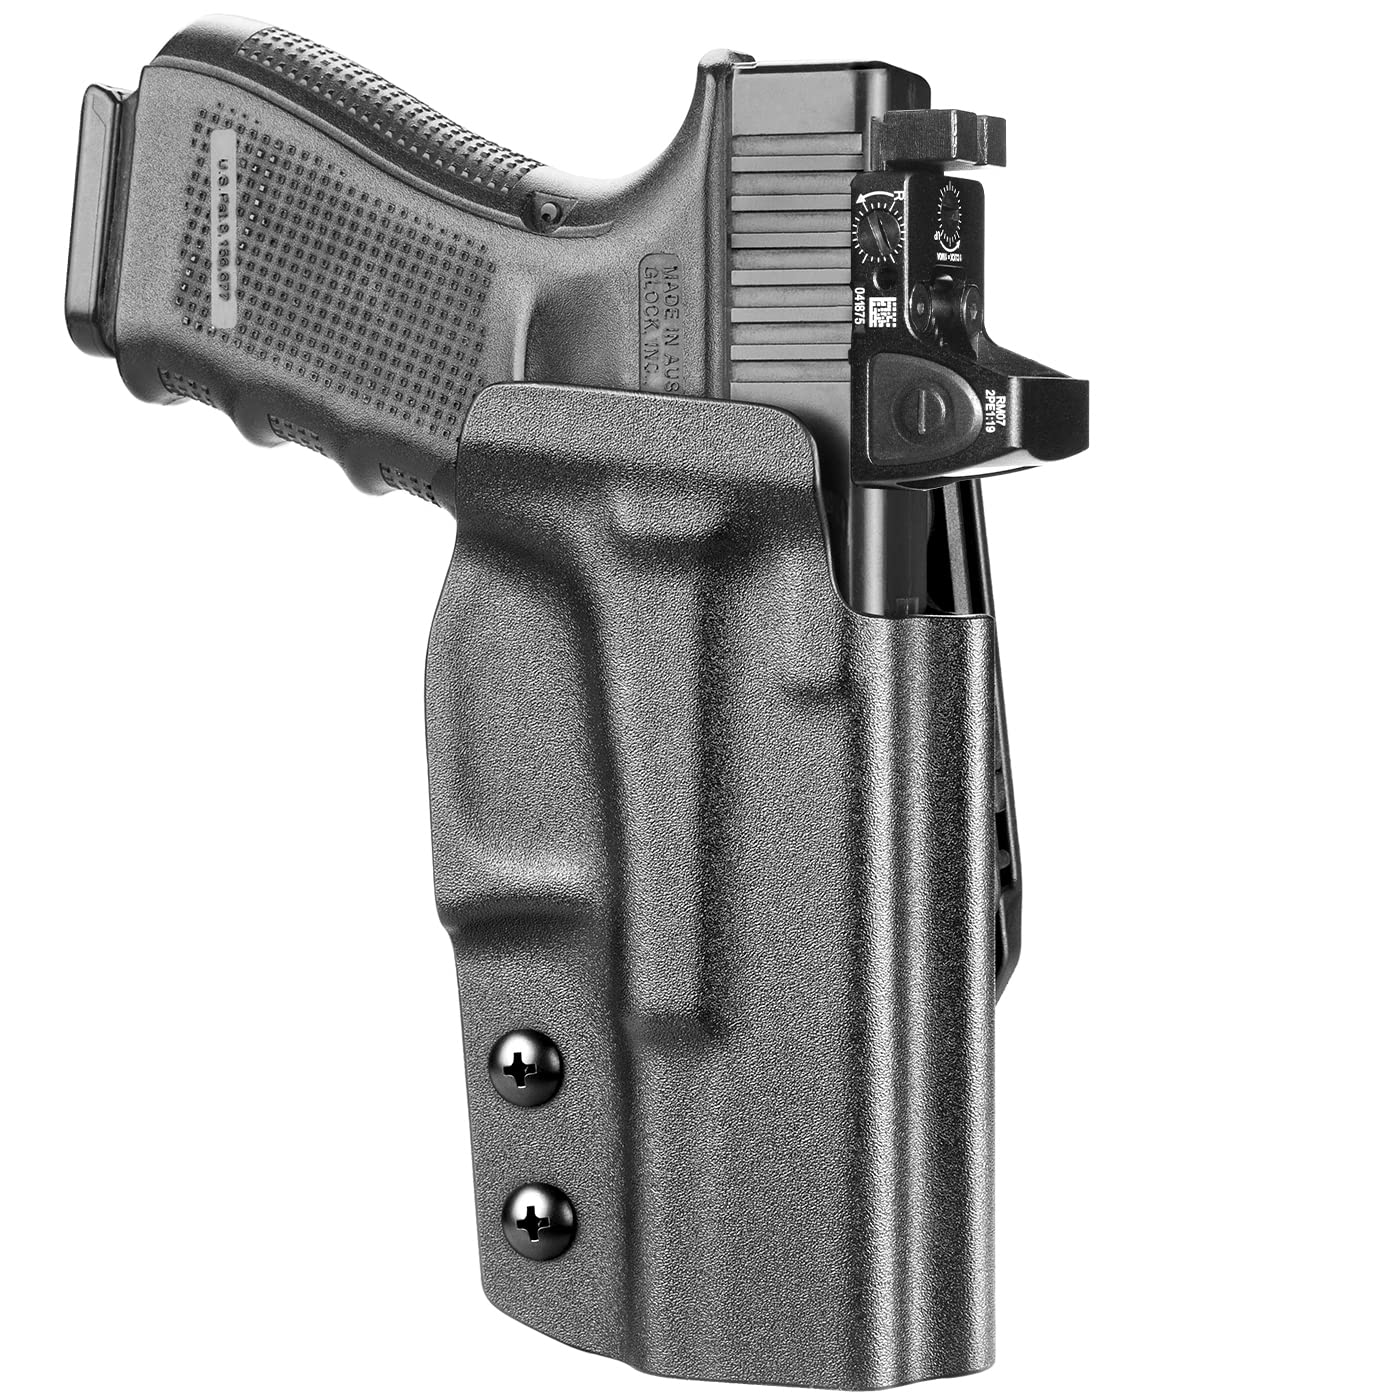 GUN & FLOWER Glock 17/19 Holster, OWB Kydex Holster Fits Glock 17 19 19X 31 32 45 (Gen1-5)&Glock 22 23 (Gen 1-4), Outside Waistband Carry Hol